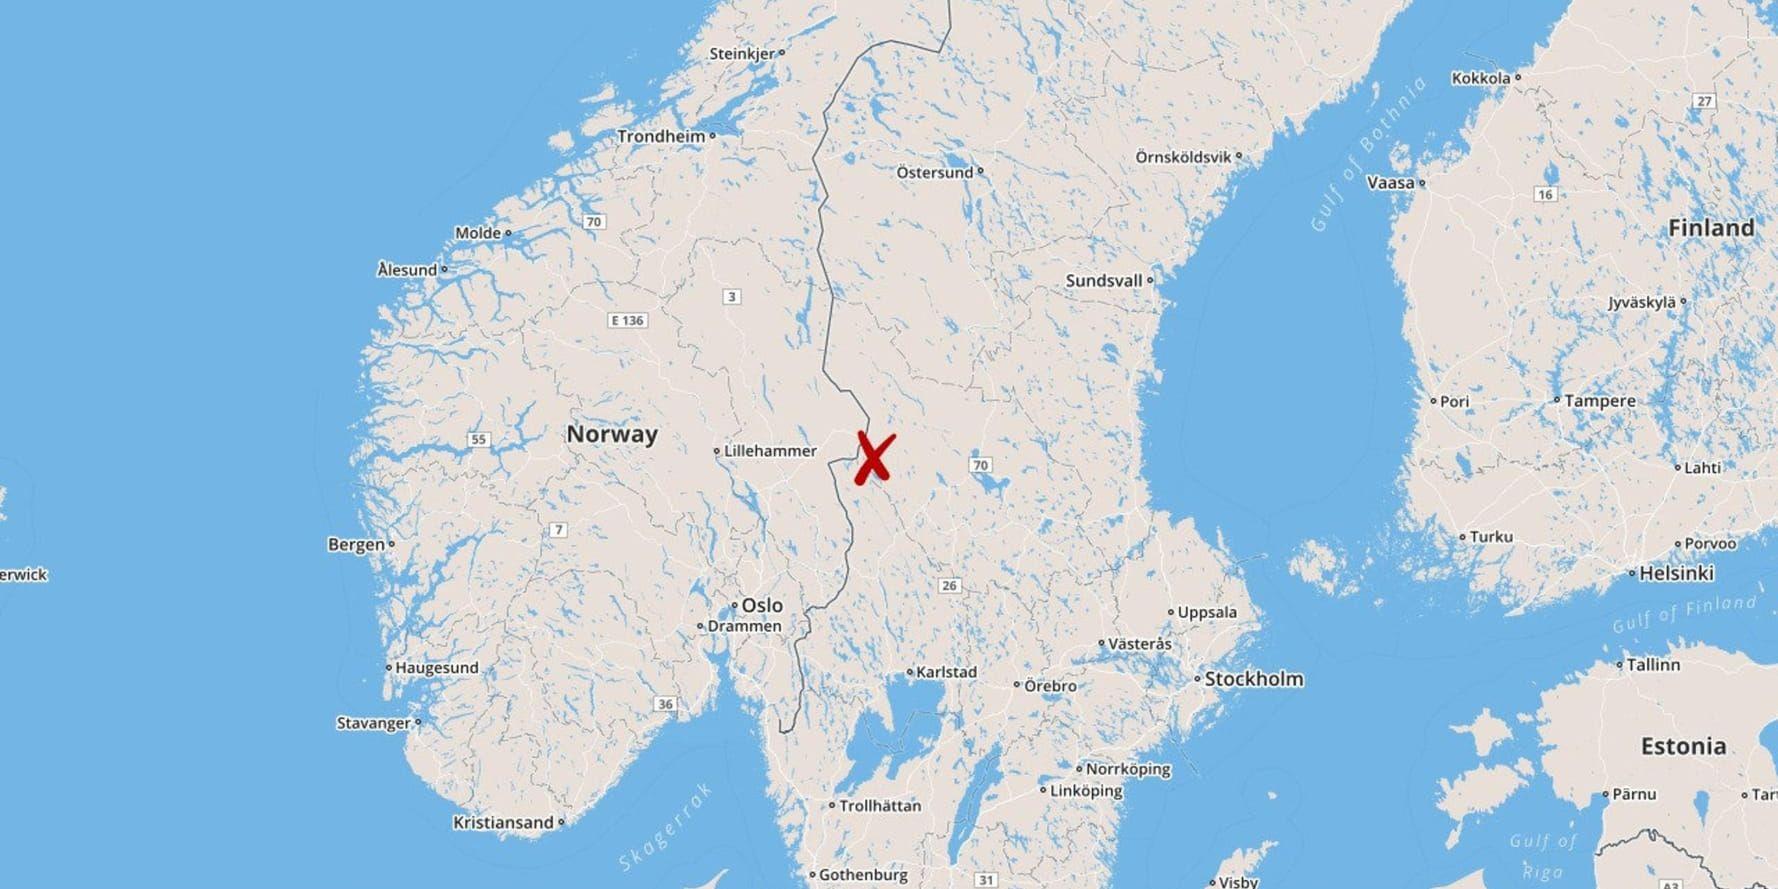 Det kan ha varit miljöbrott när skidföretaget Skistar brände ner en olovlig bosättning som EU-migranter anlagt i området Lindvallen i Sälen, enligt Malung-Sälens kommun.